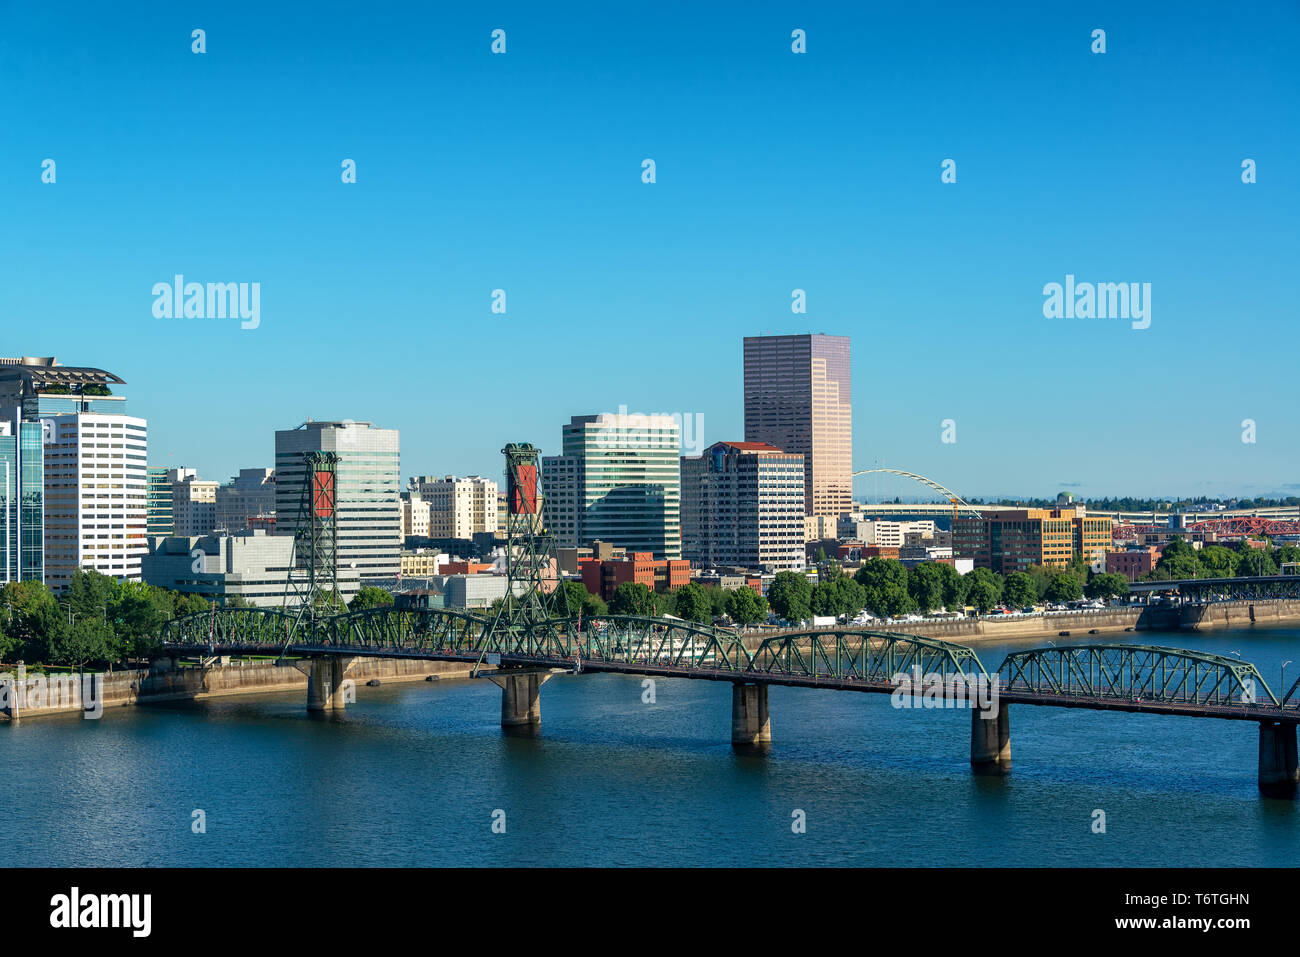 Cityscape view de magnifique centre-ville de Portland, Oregon avec l'Hawthorne Bridge au premier plan Banque D'Images